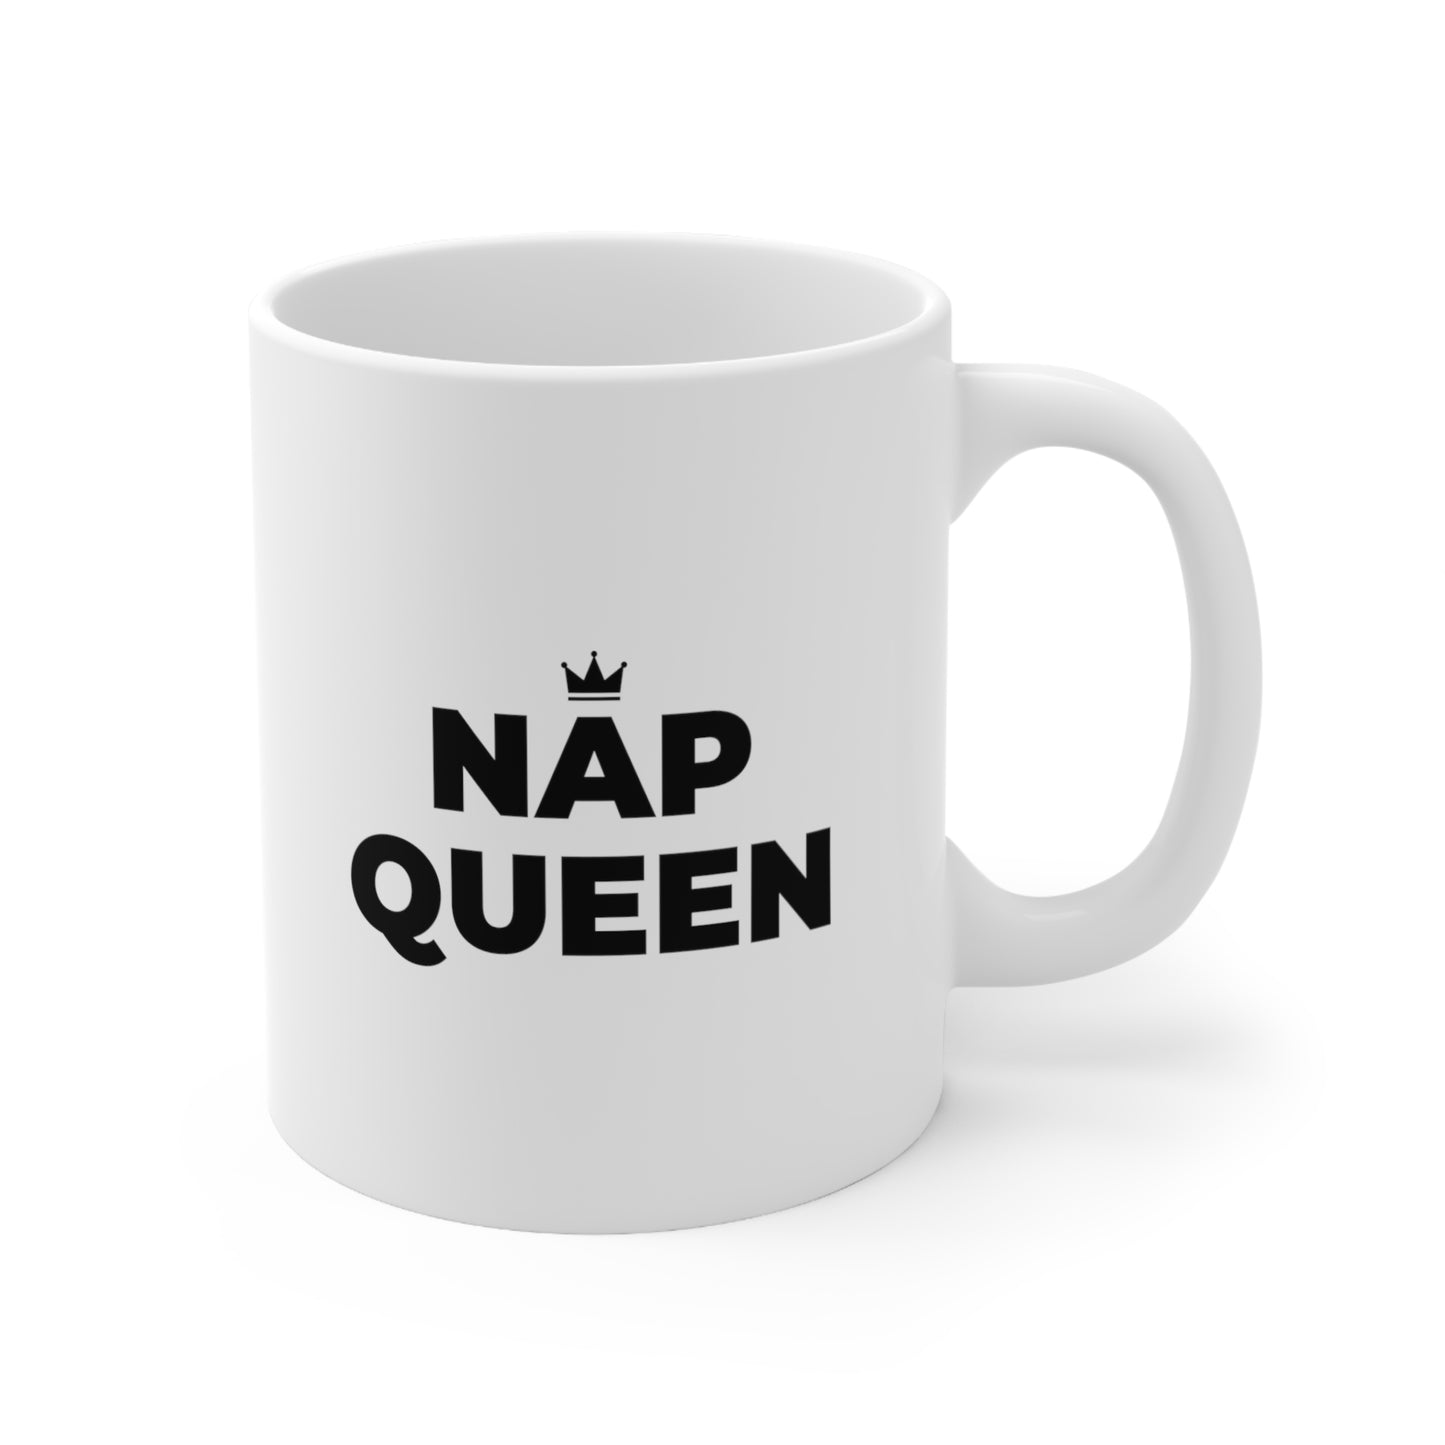 Nap Queen Coffee Mug 11oz